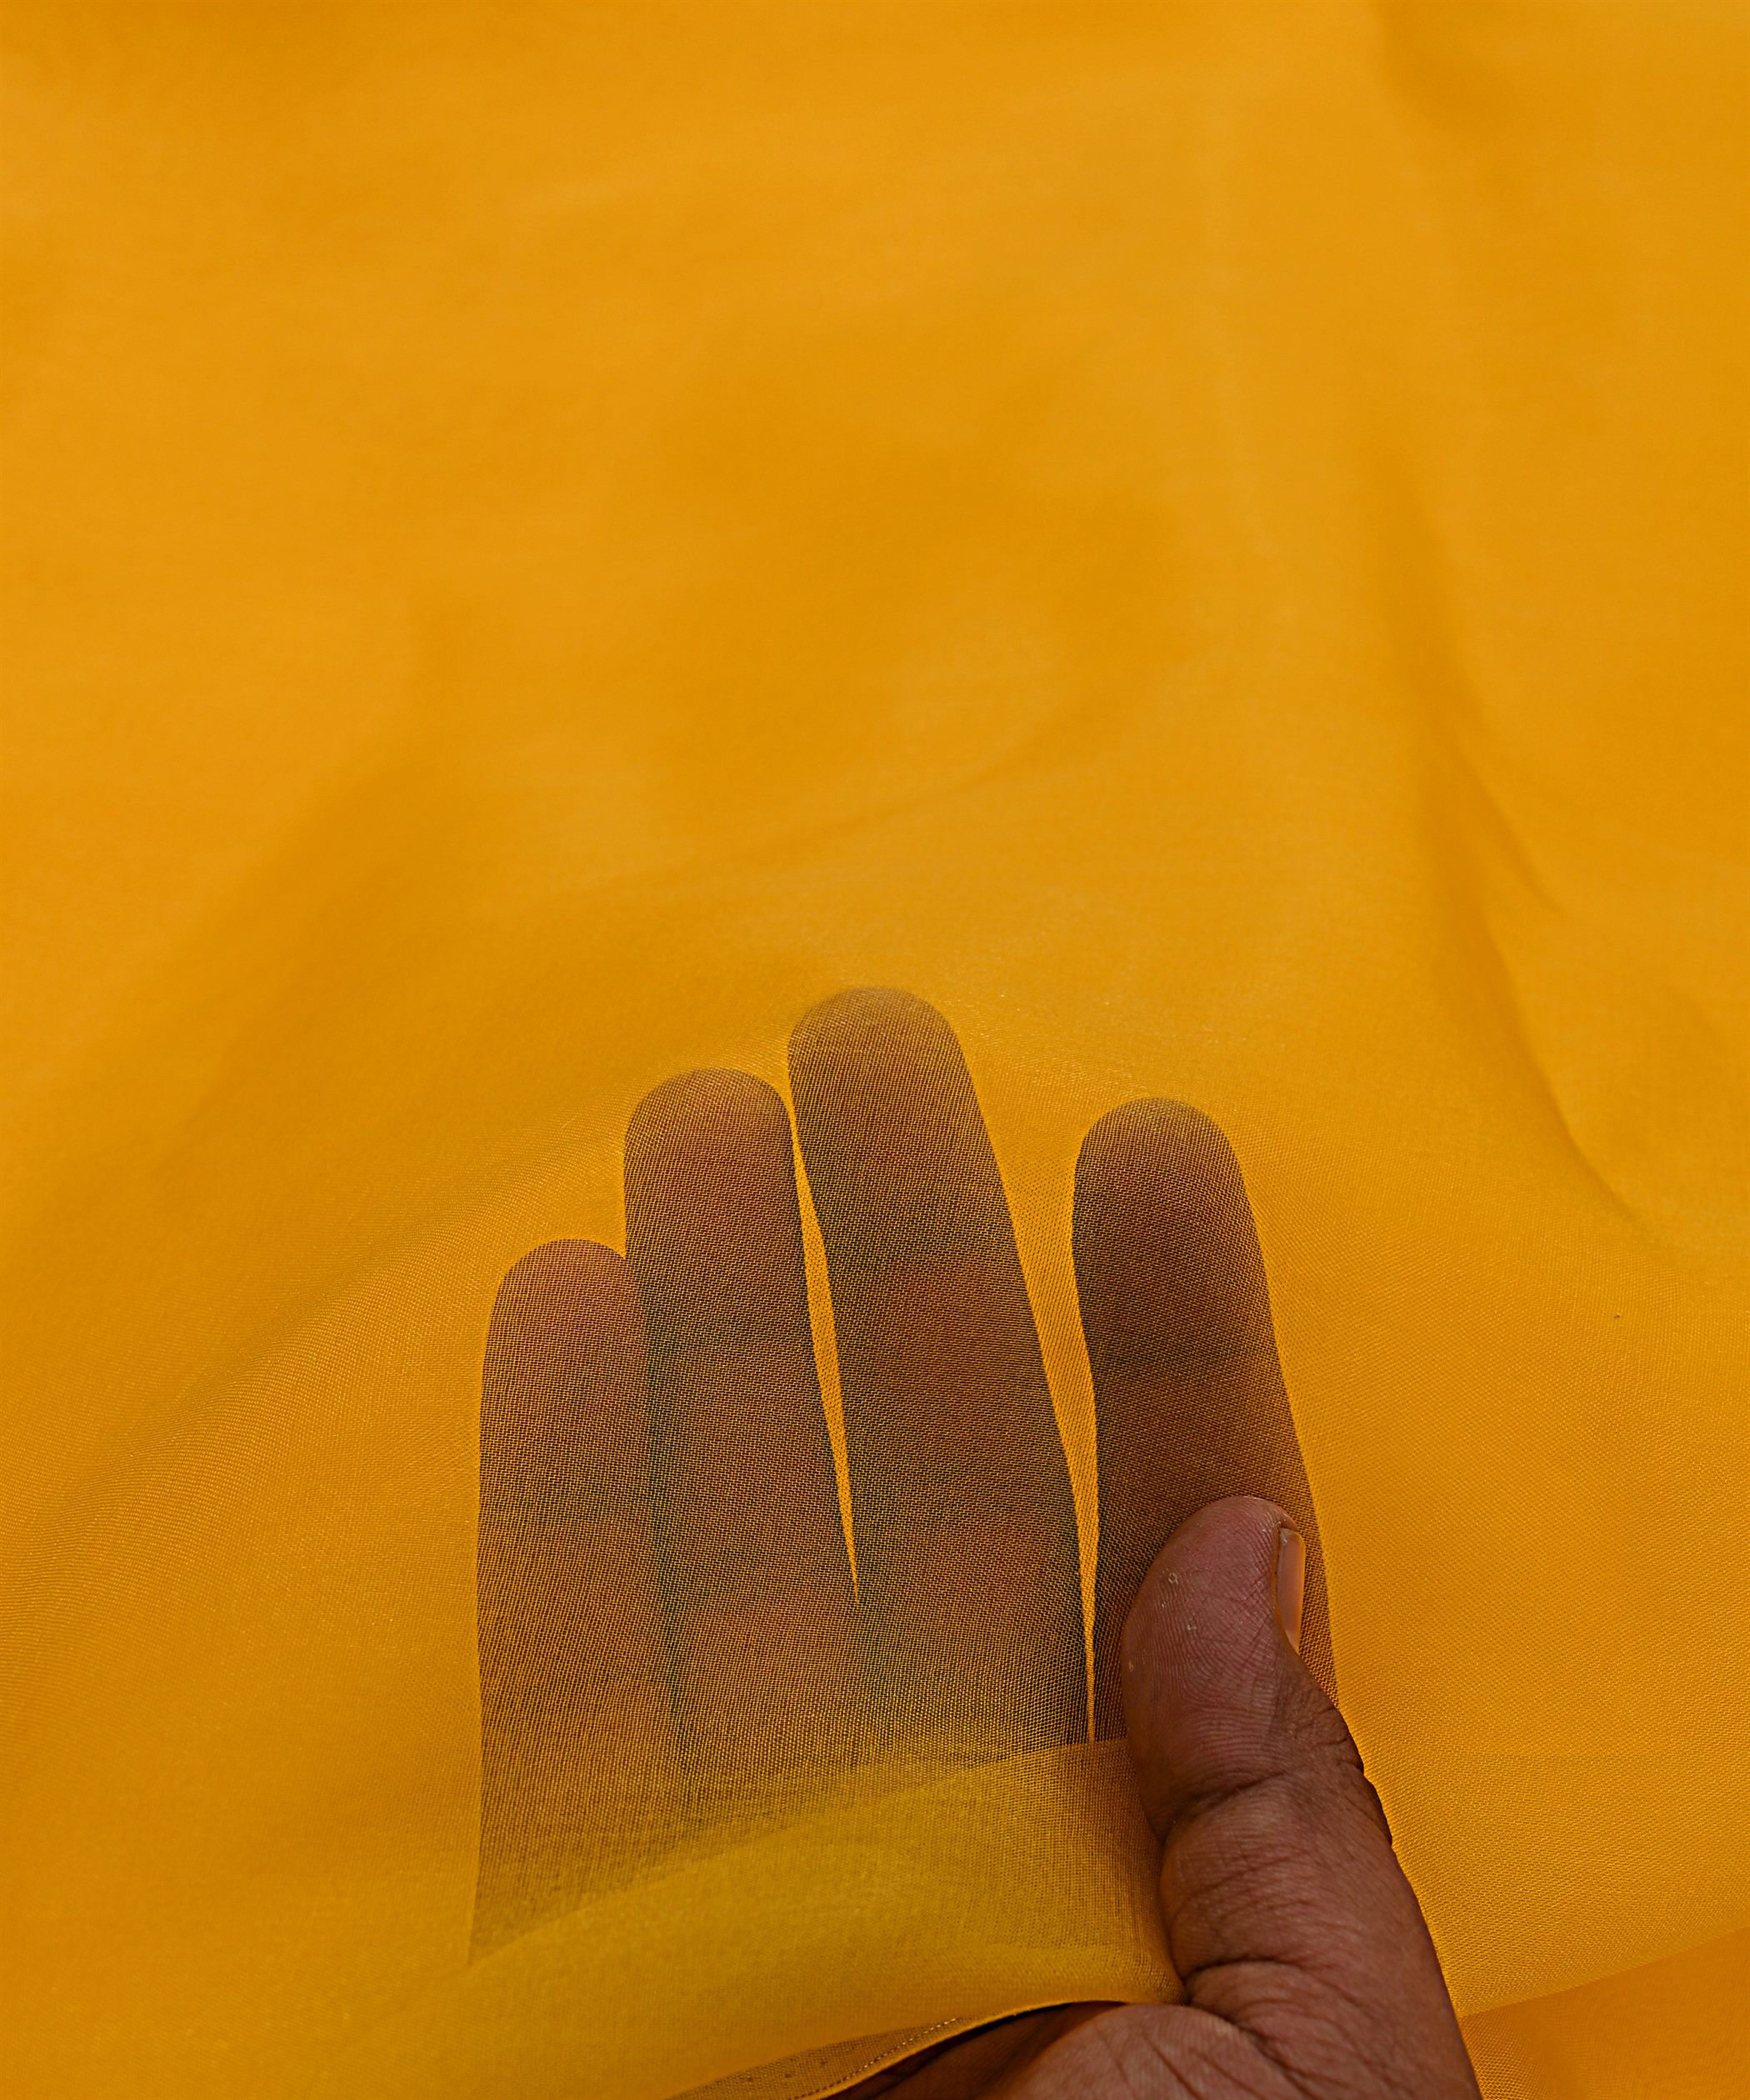 Mustard Yellow Plain Dyed Organza Fabric